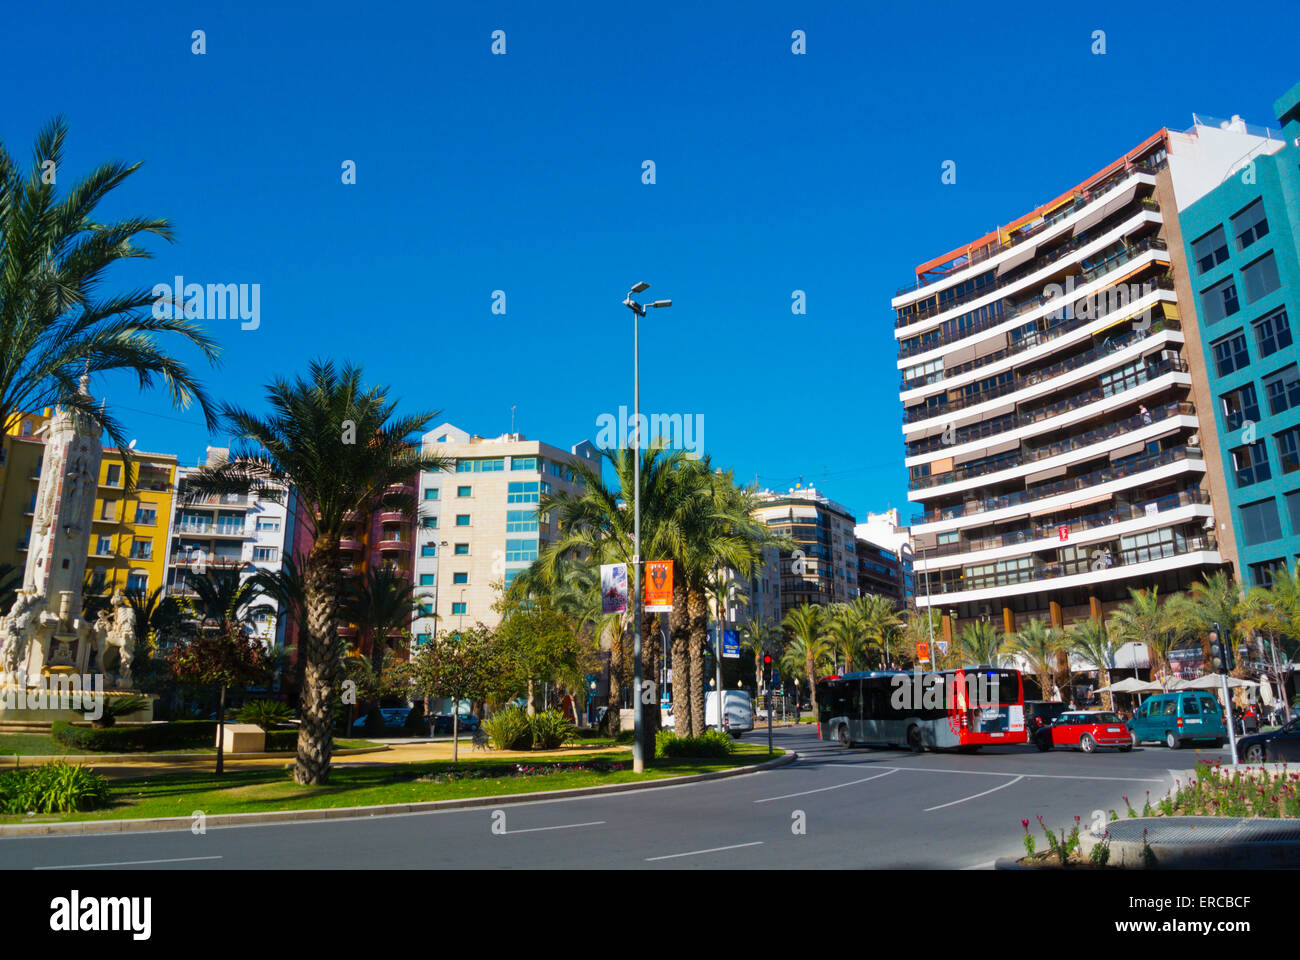 Plaza de Los Luceros, Alacant, Alicante, Costa Blanca, Spanien Stockfoto